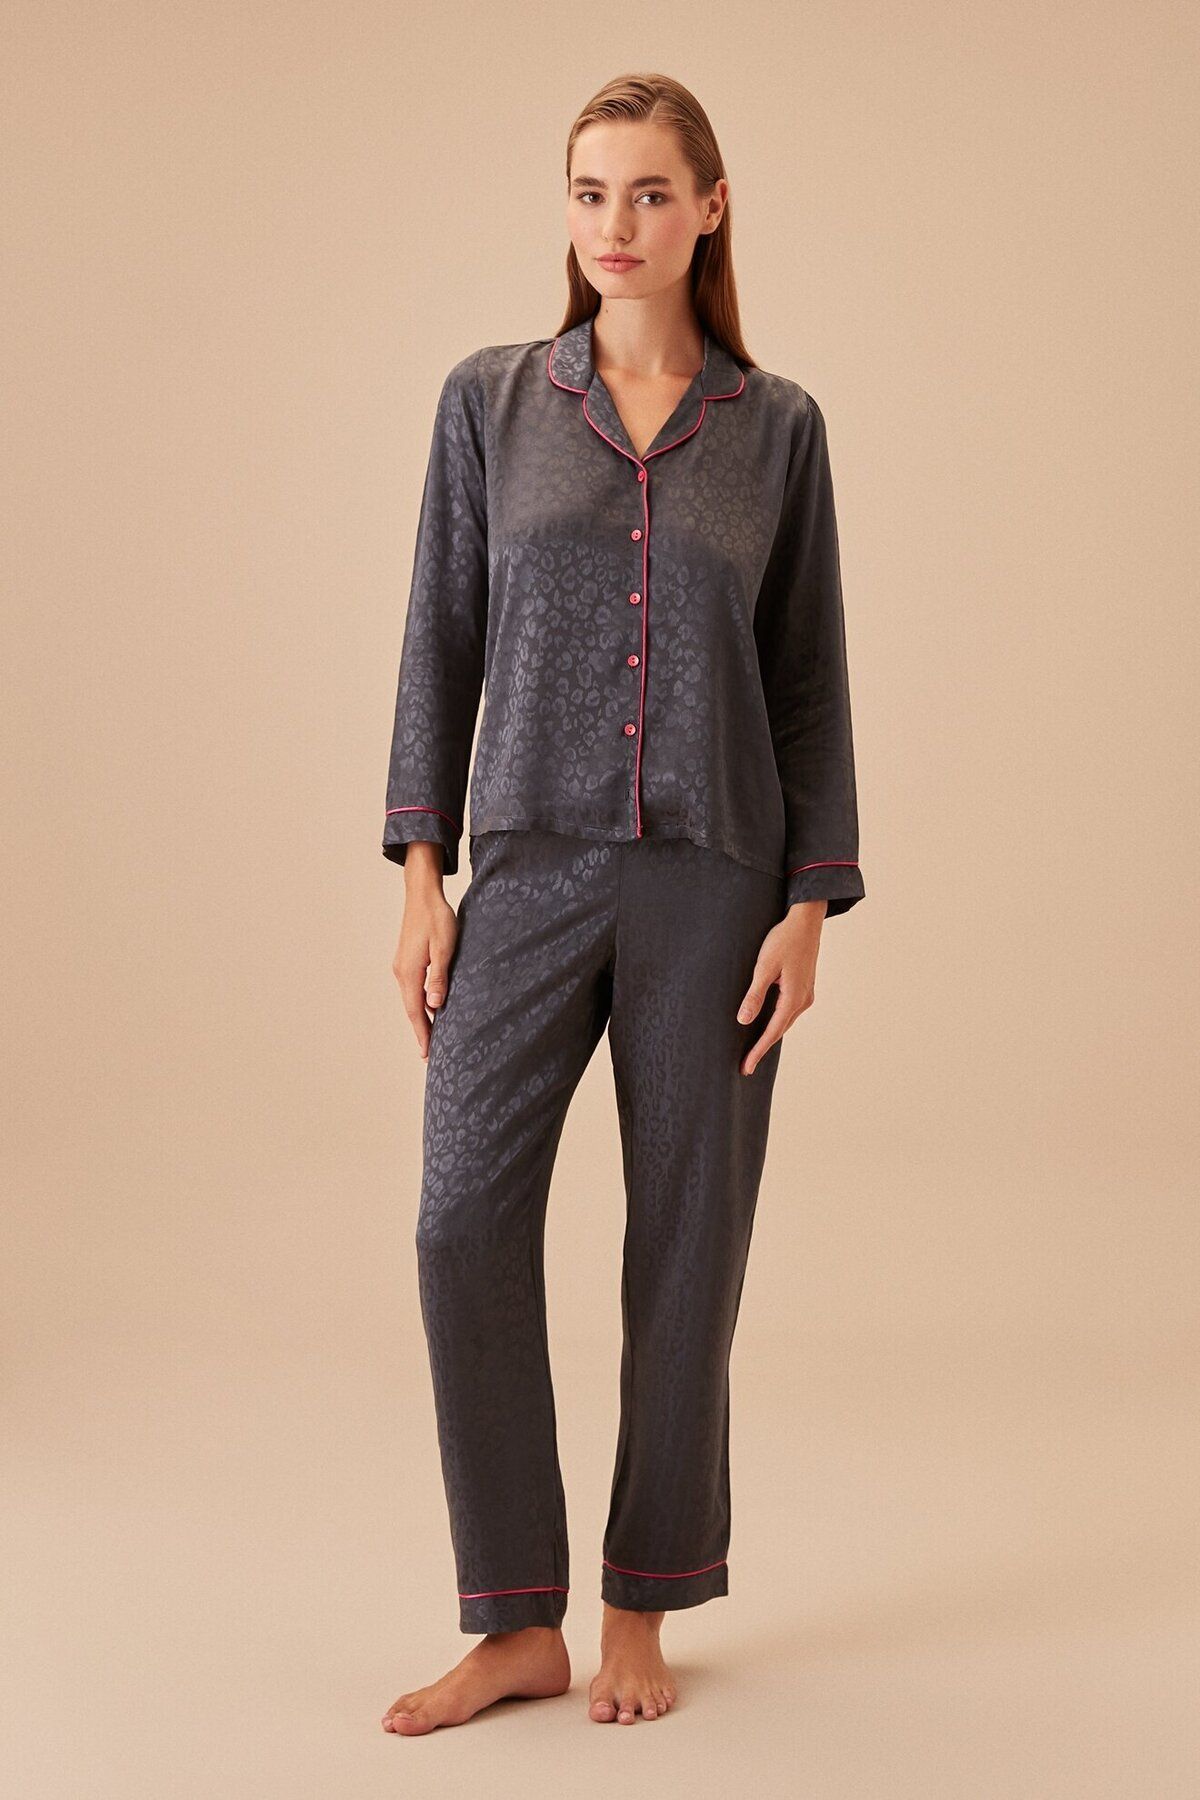 Suwen Elegance Maskülen Pijama Takımı